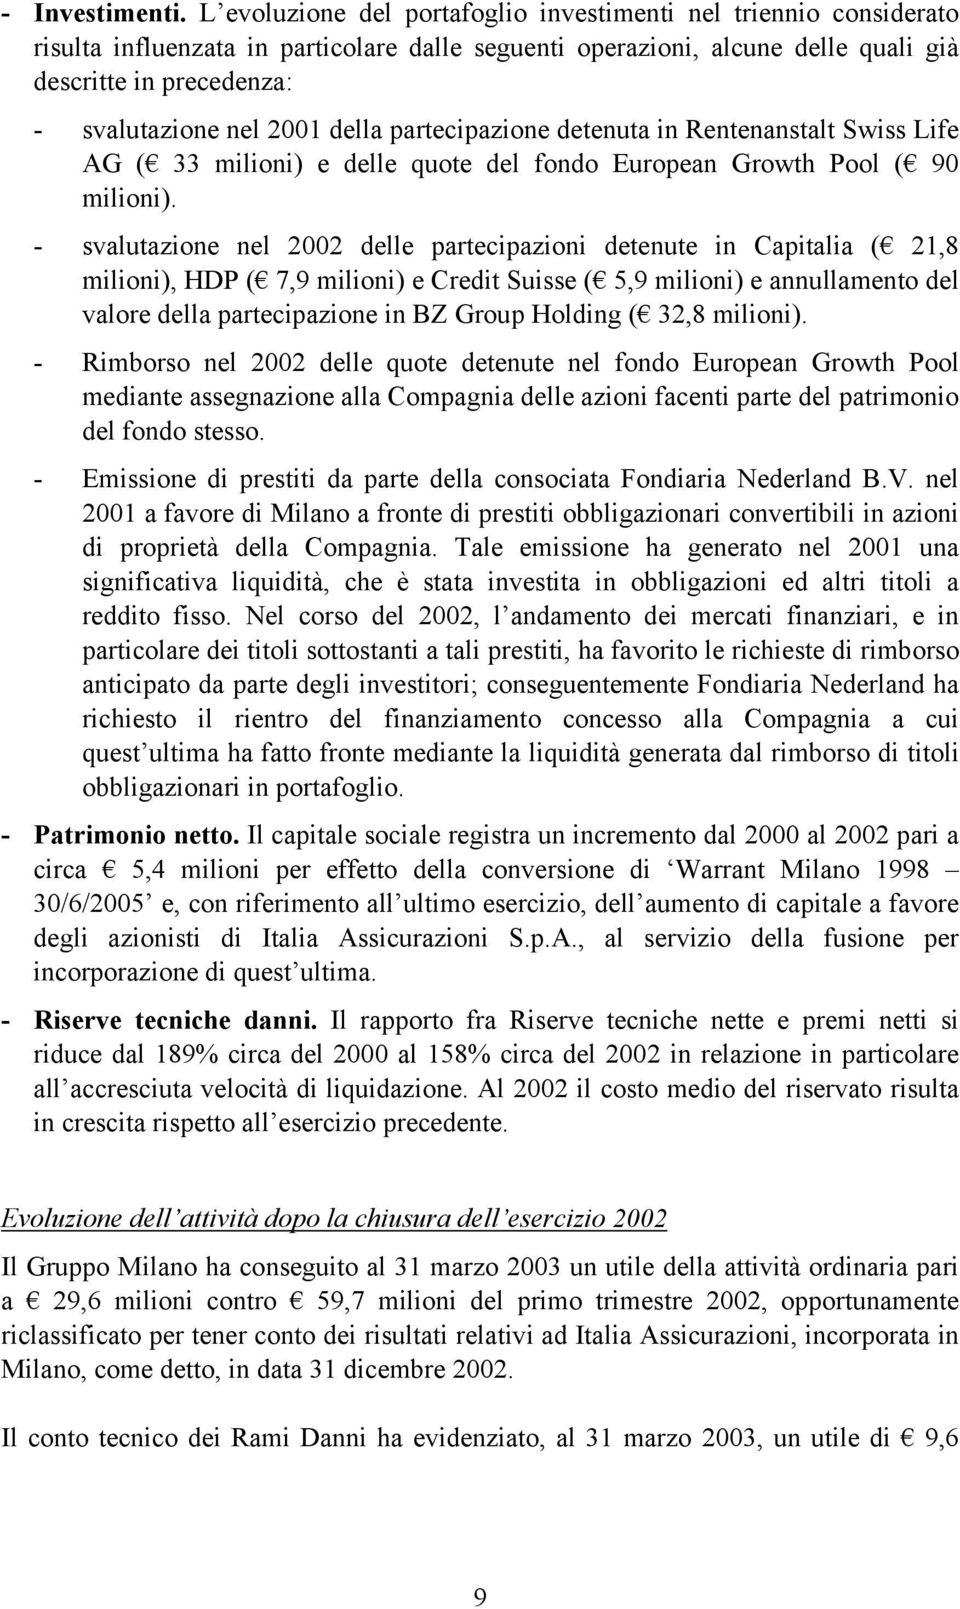 2001 della partecipazione detenuta in Rentenanstalt Swiss Life AG ( 33 milioni) e delle quote del fondo European Growth Pool ( 90 milioni).